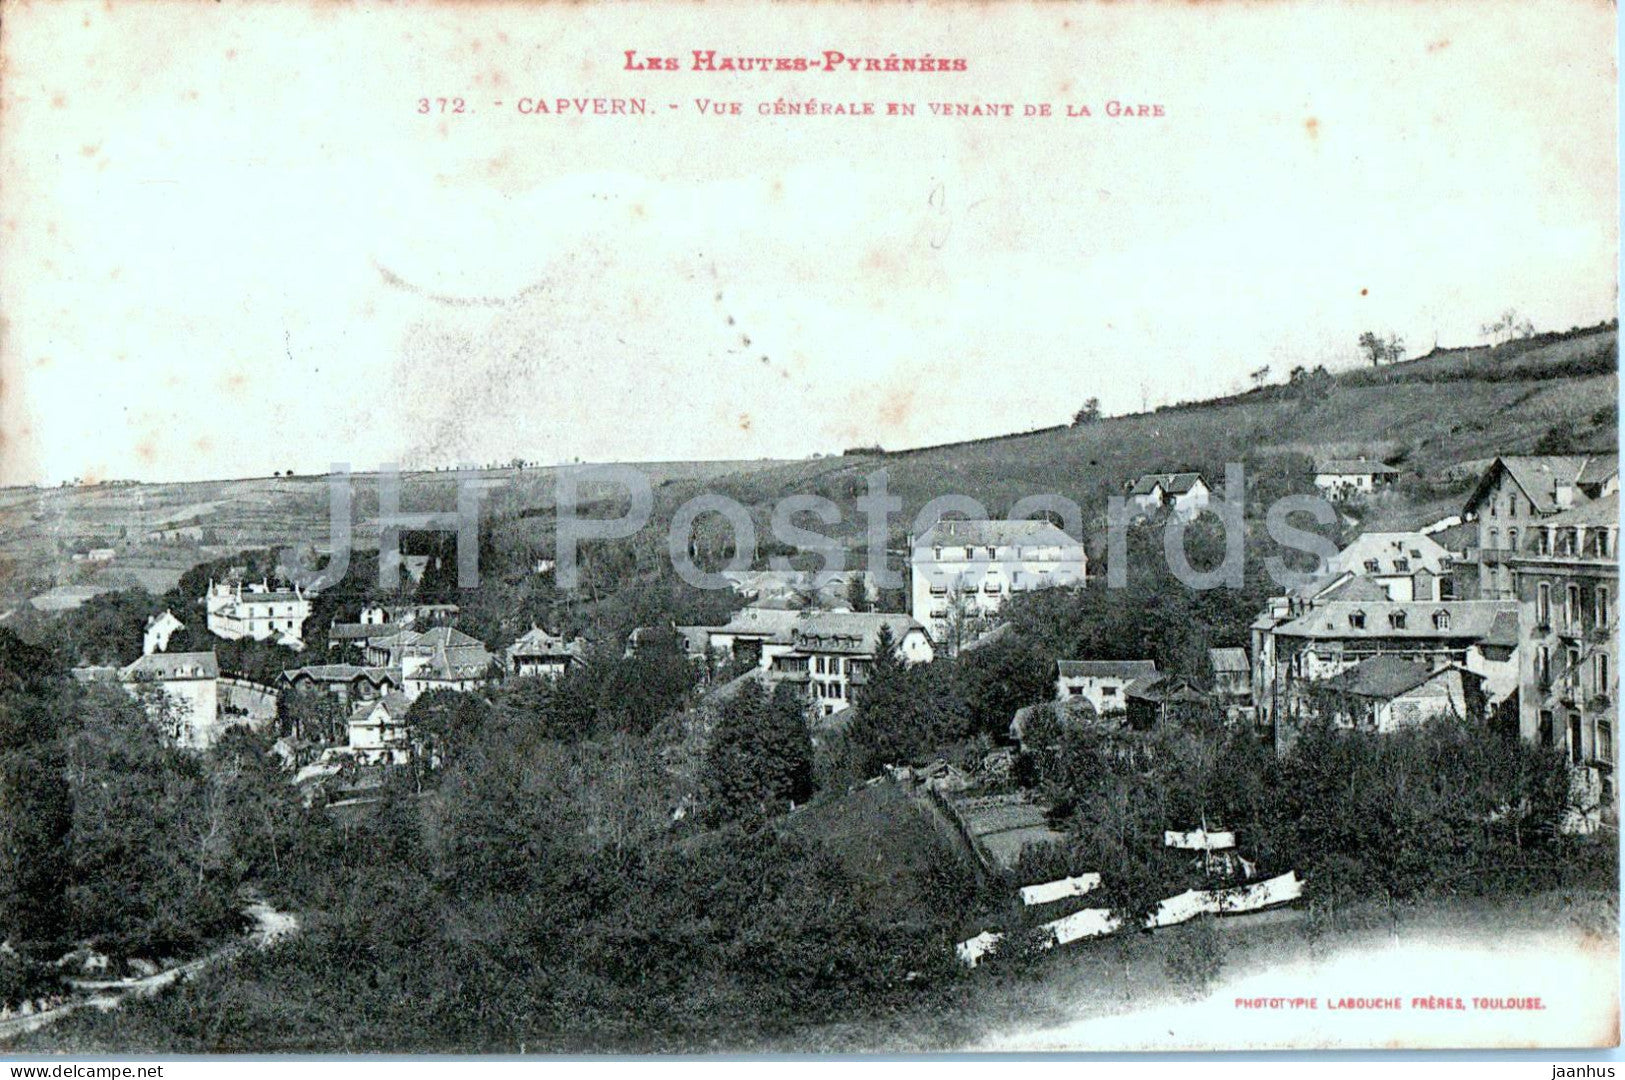 Capvern - Vue Generale en Venant de la Gare - Les Hautes Pyrenees - 372 - old postcard - 1907 - France - used - JH Postcards